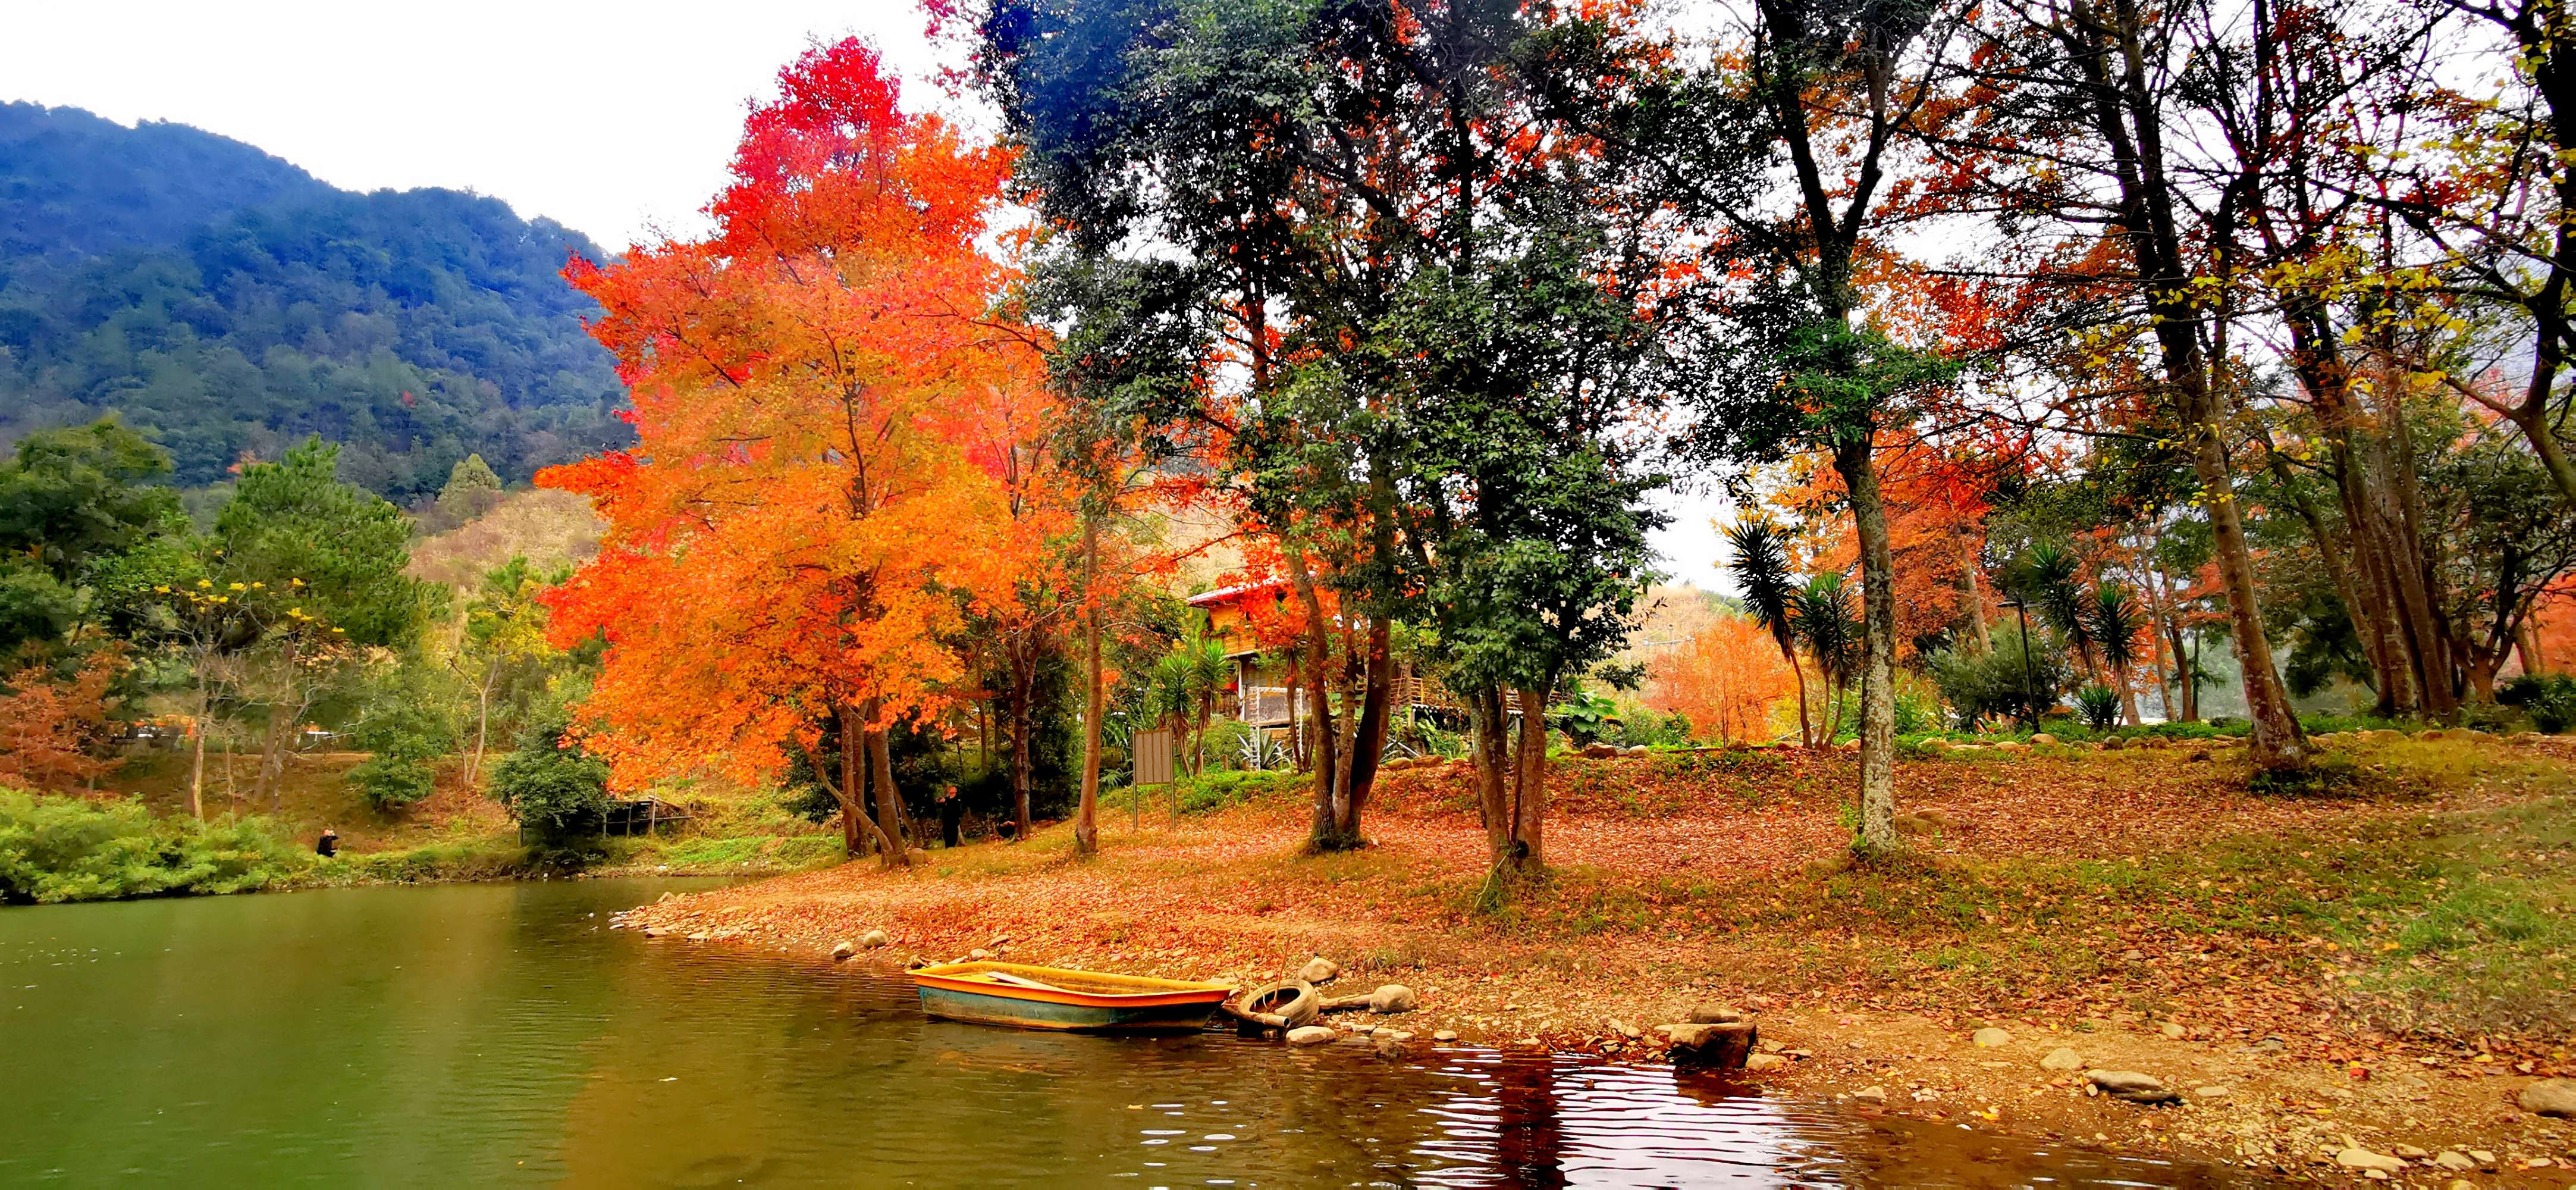 中山的秋意渐浓之时，南岭国家森林公园的秋叶也开始被秋风染红